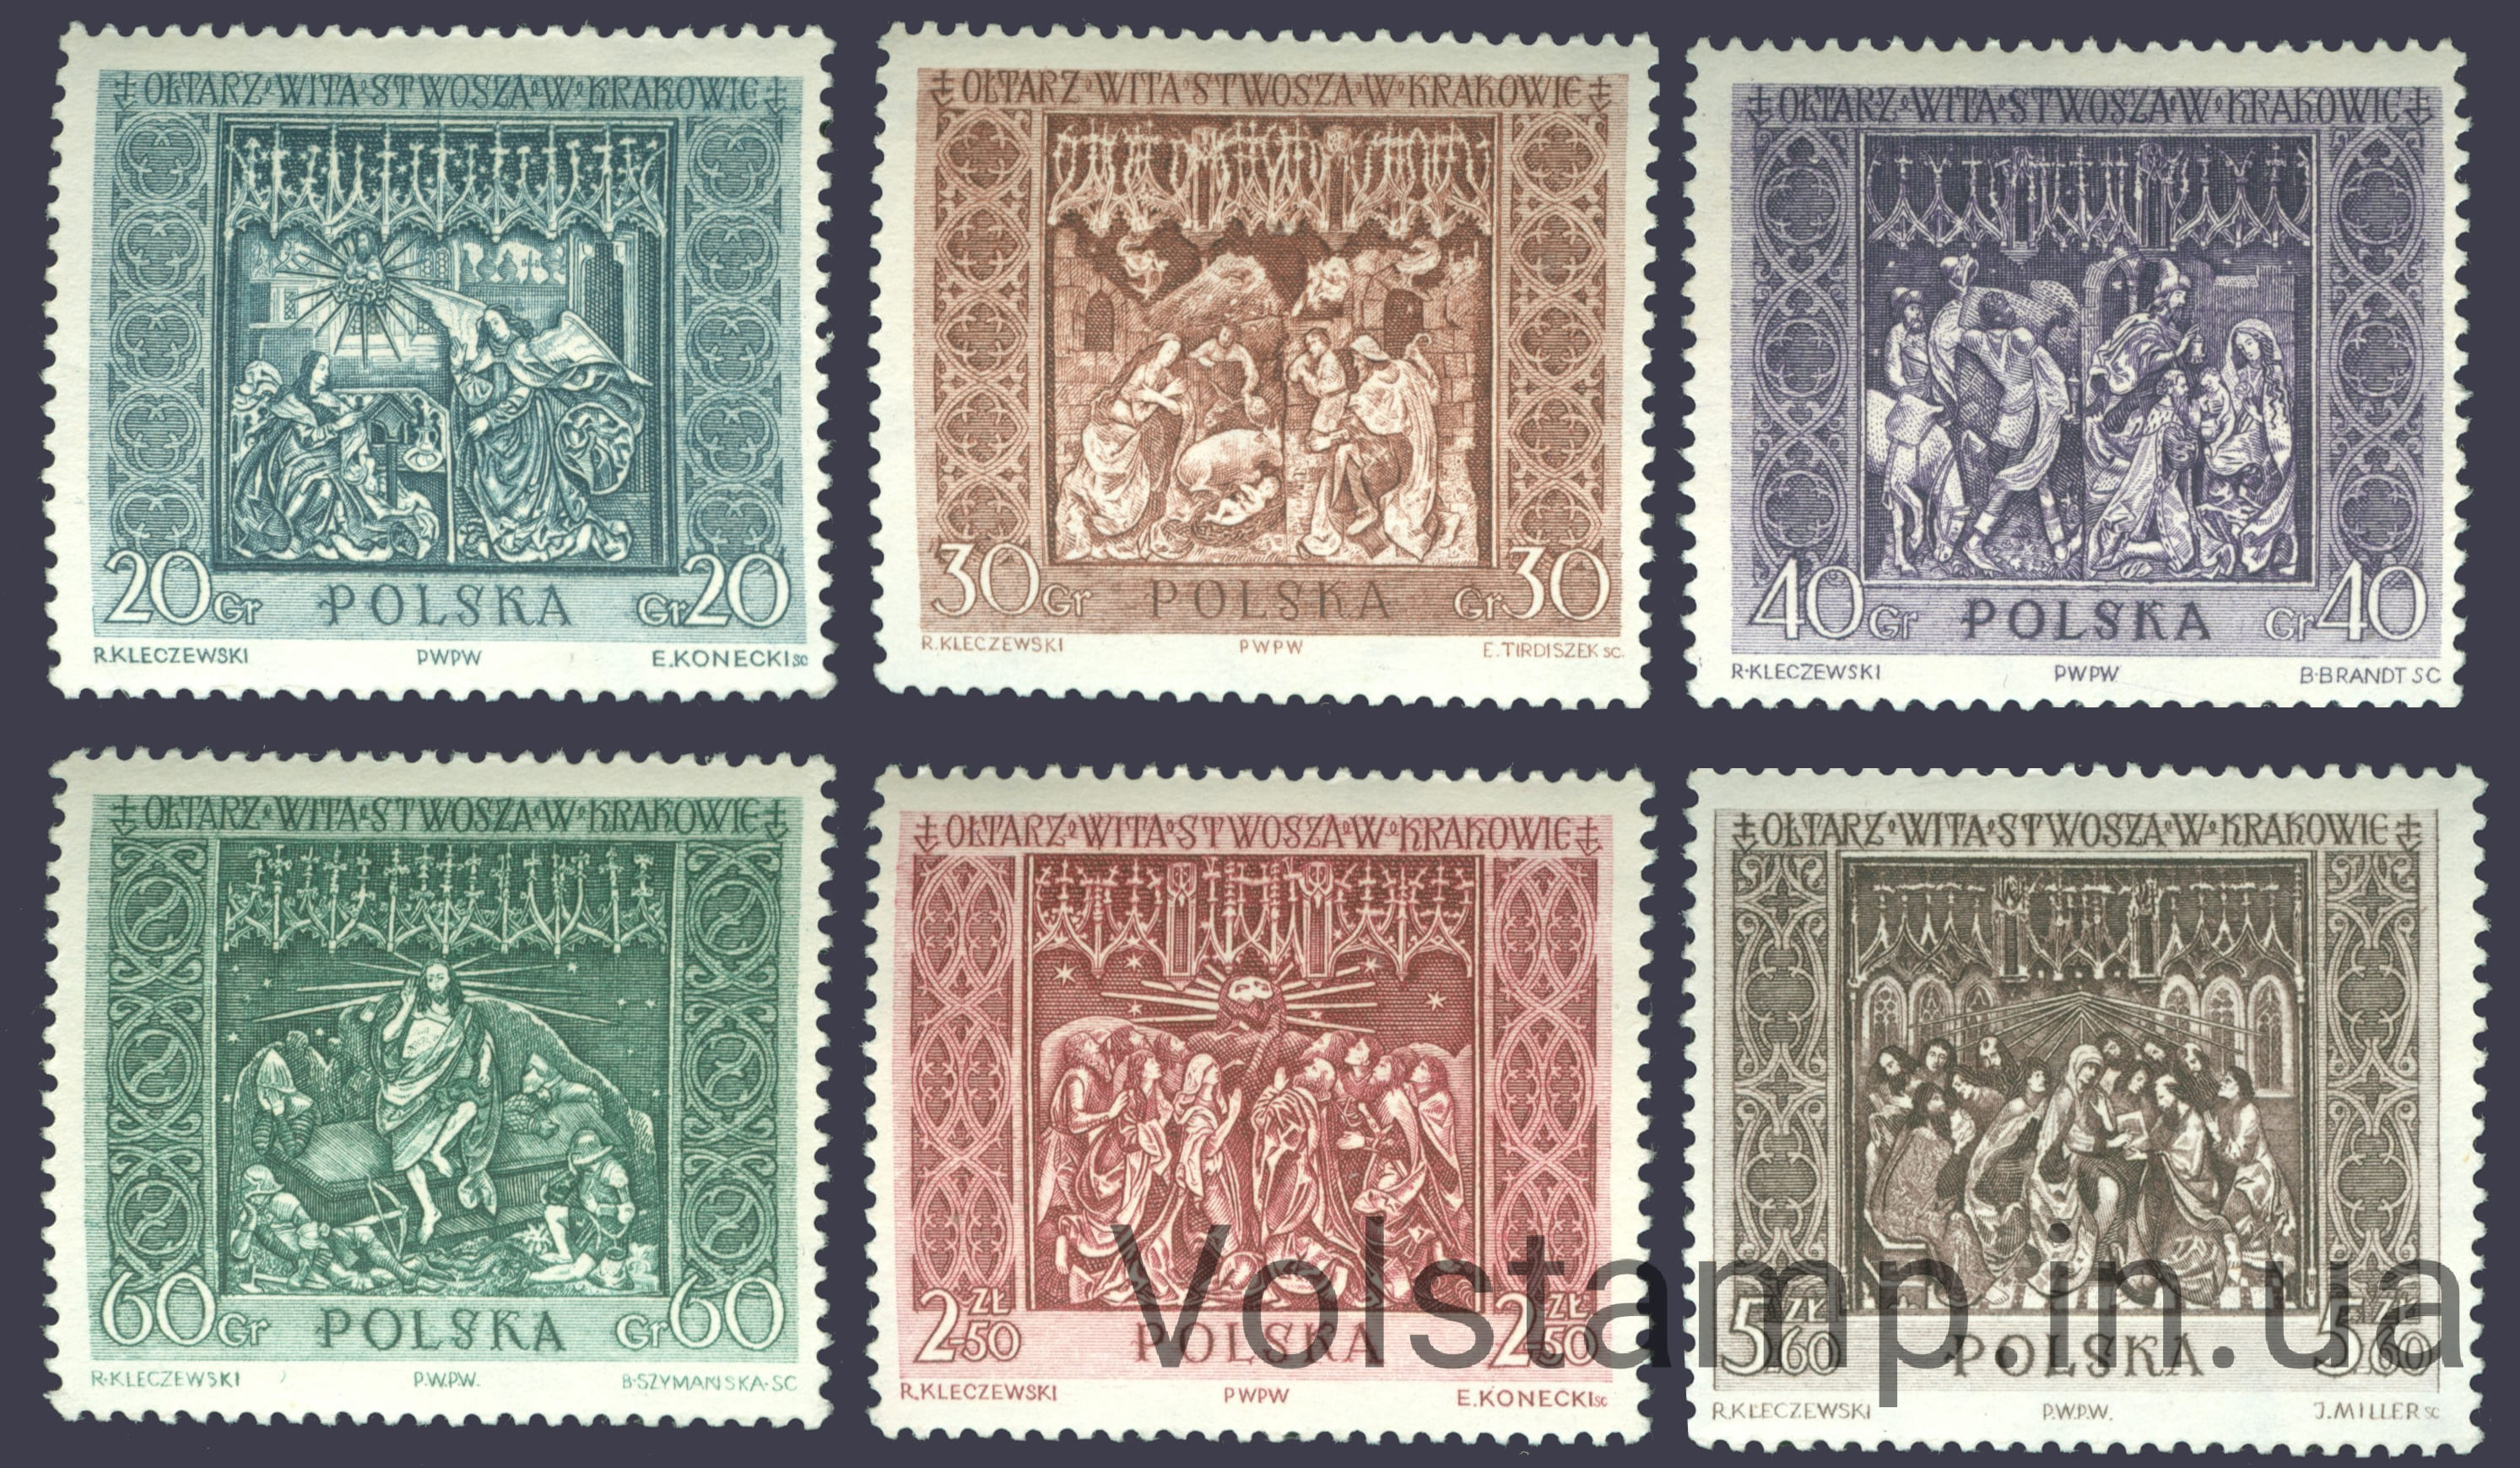 1960 Польша Серия марок (Алтарь Veit Stoss в церкви Святой Марии, Краков, Живопись) MNH №1179-1184